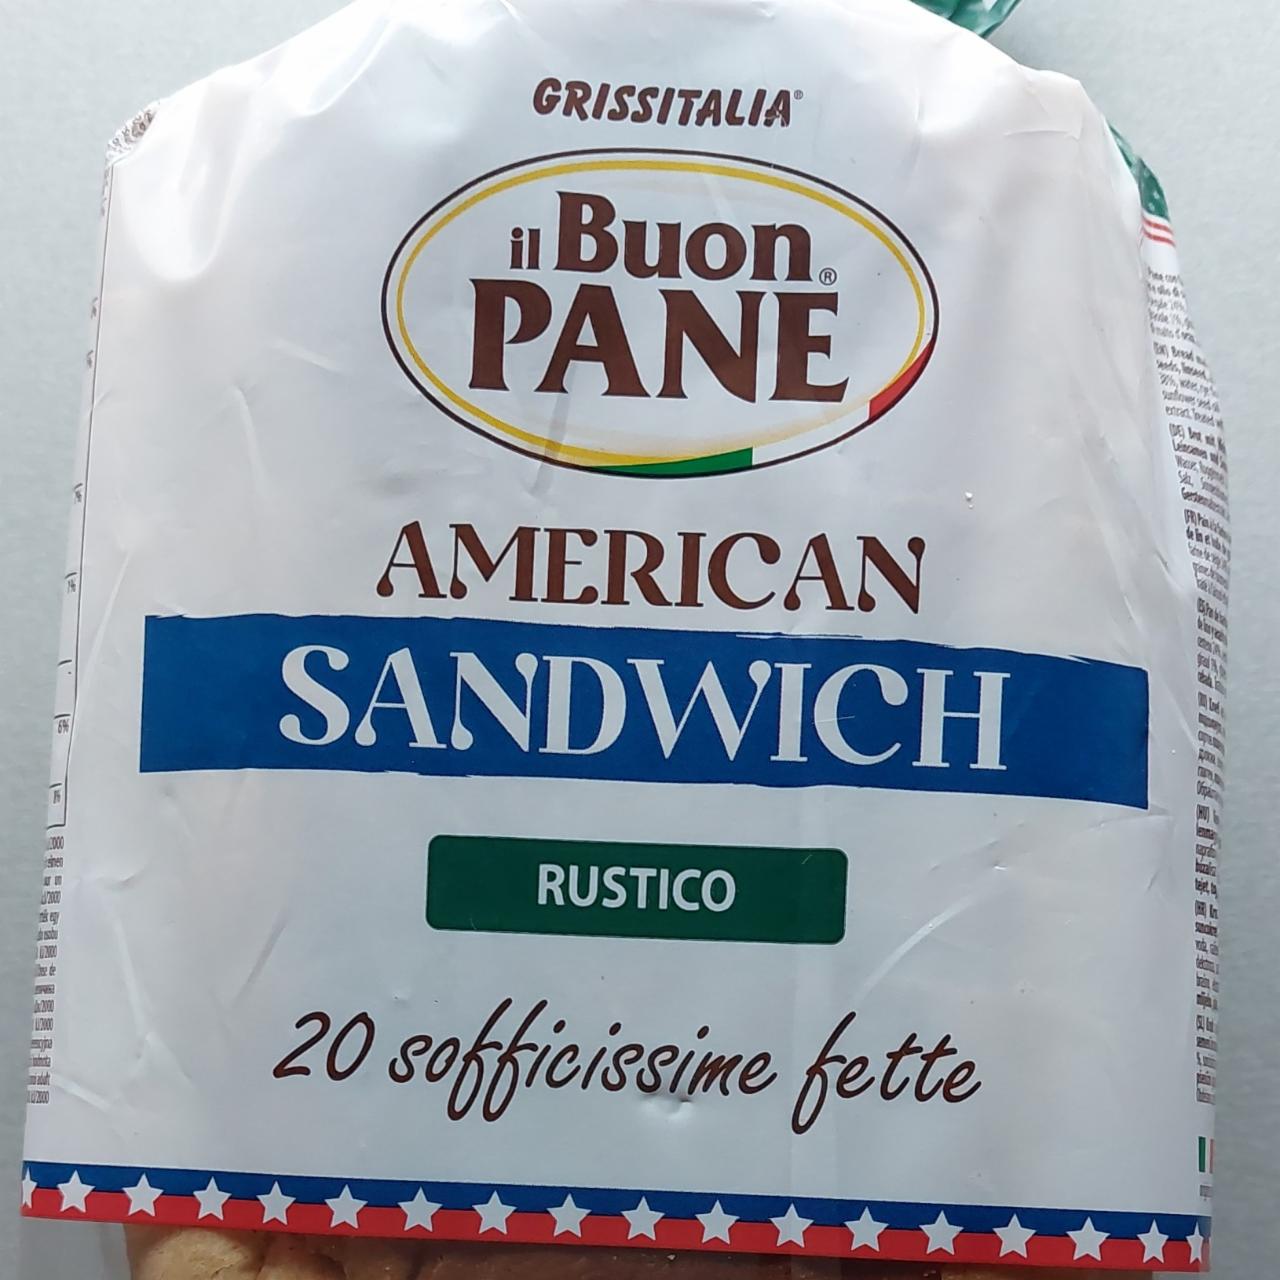 Fotografie - American Sandwich Rustico il Buon Pane